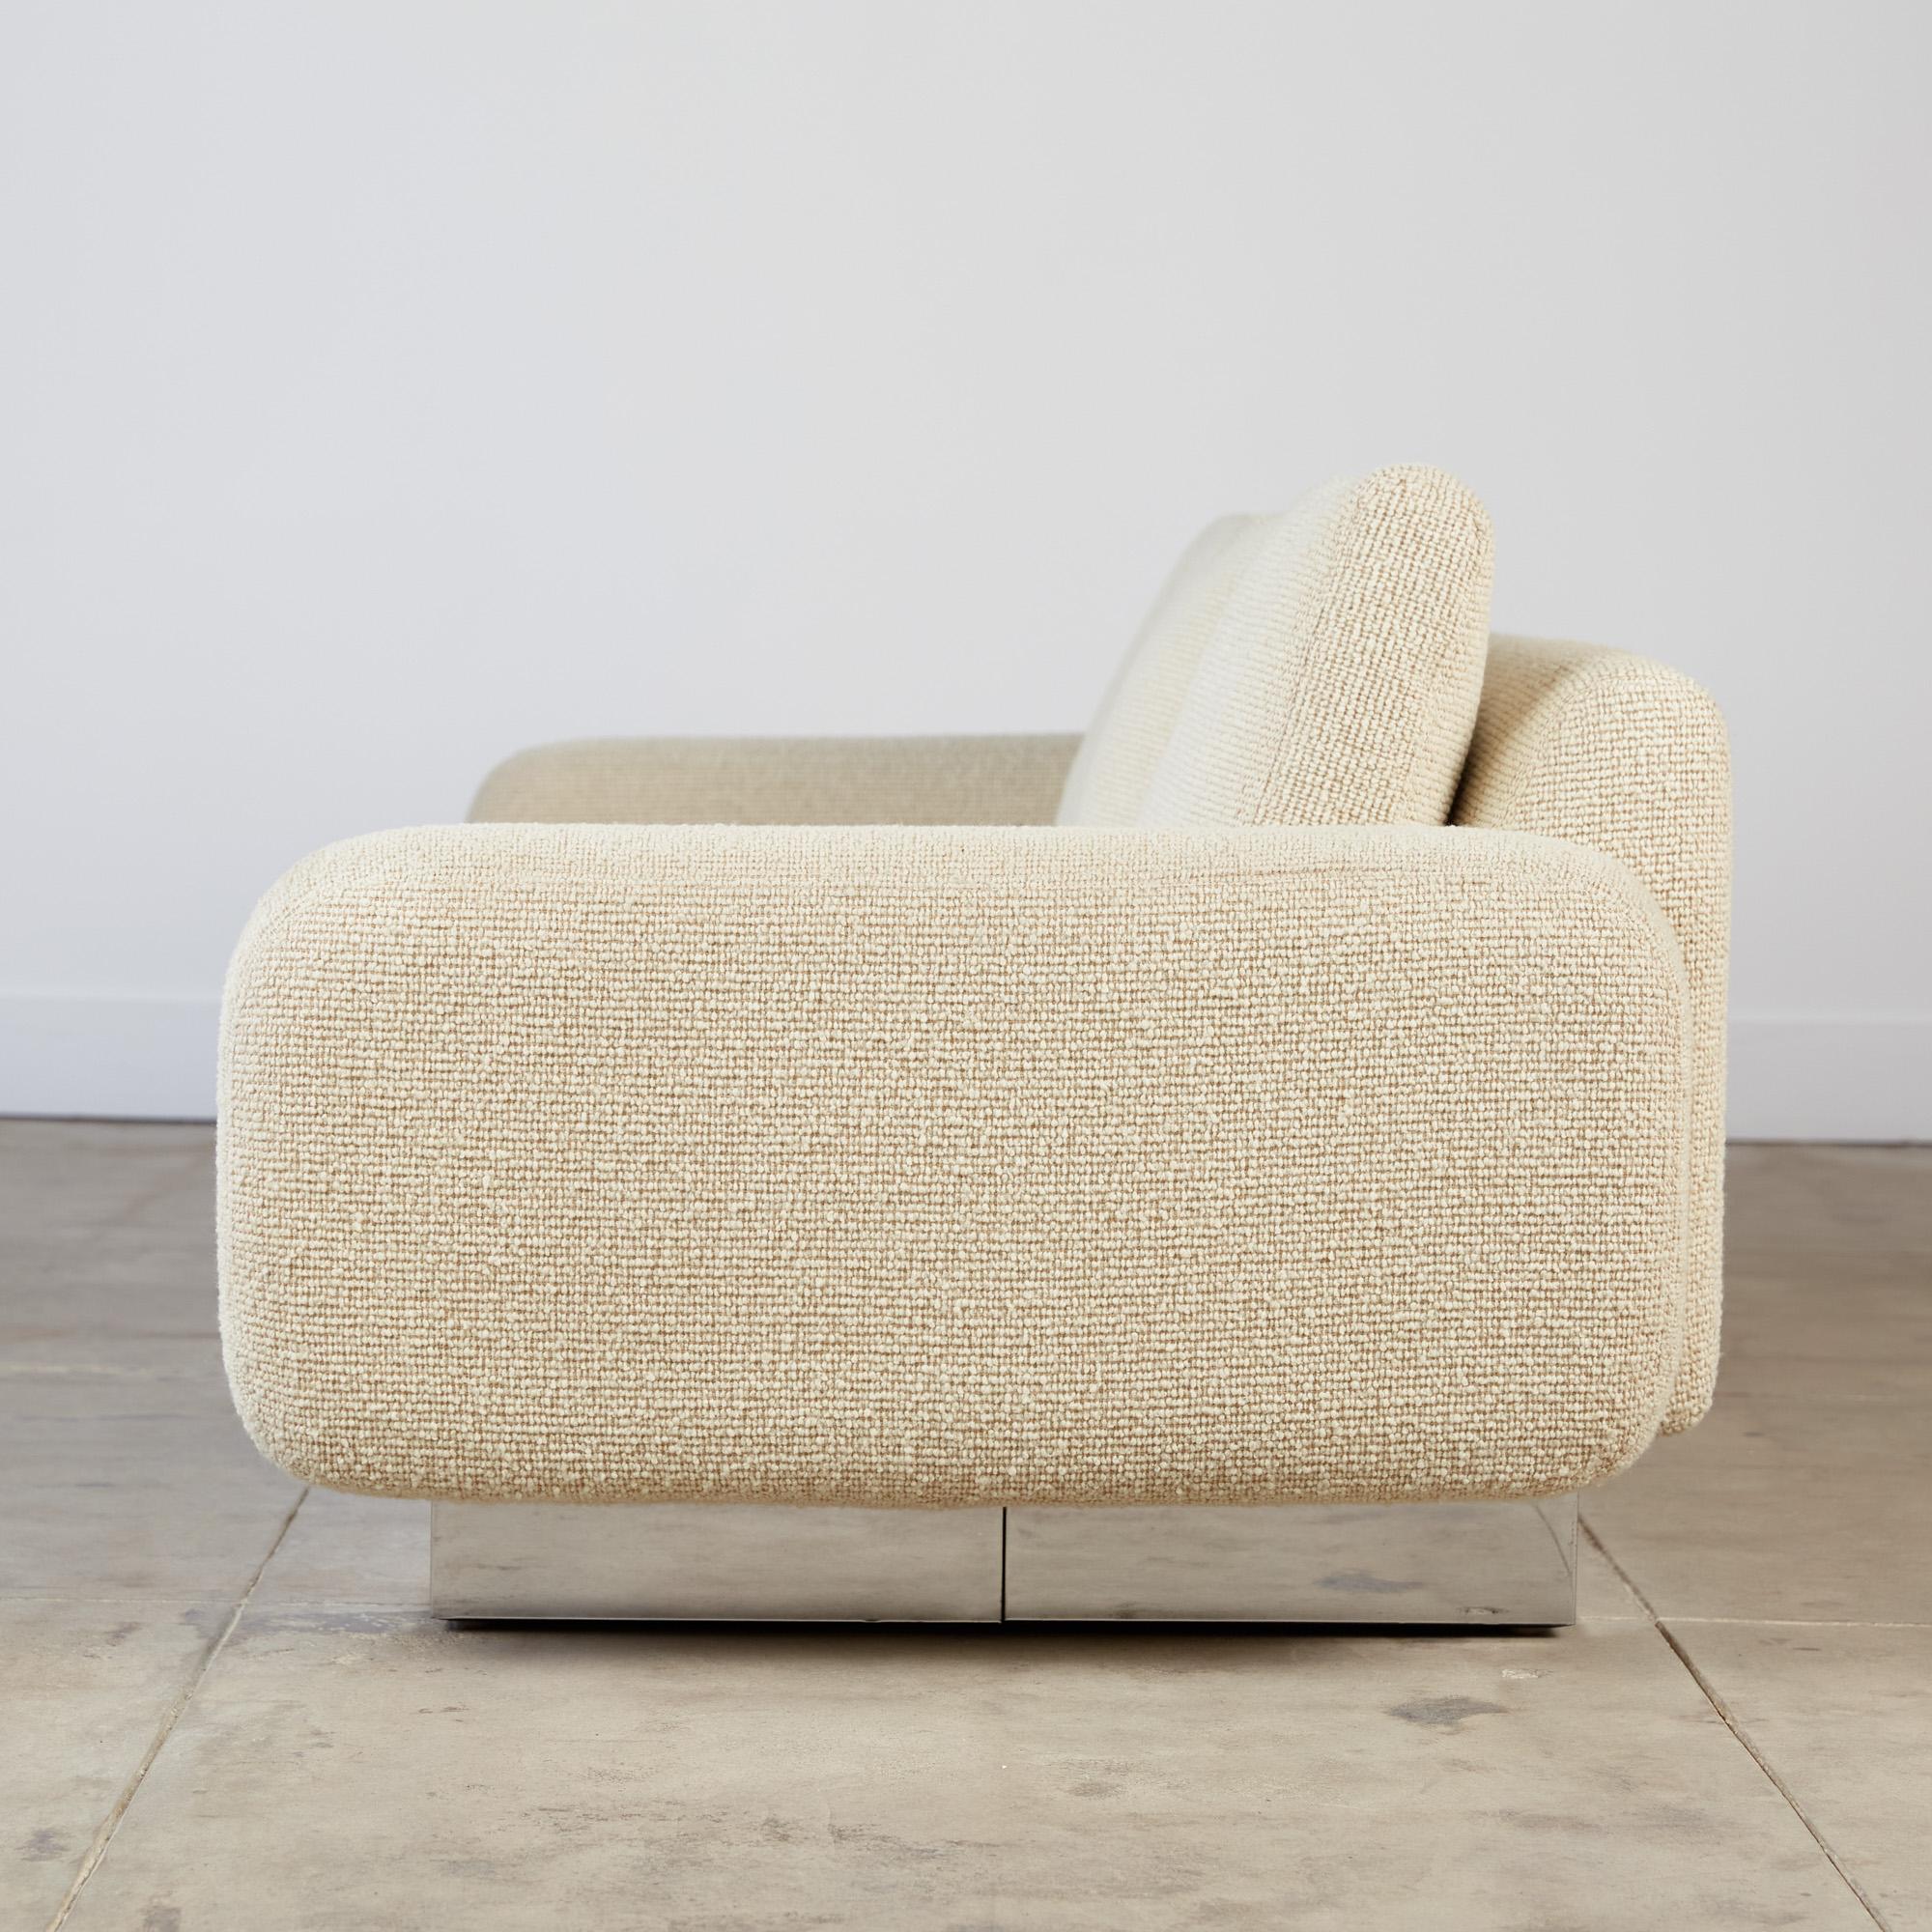 Post-Modern Milo Baughman Style Bouclé Sofa with Chrome Base